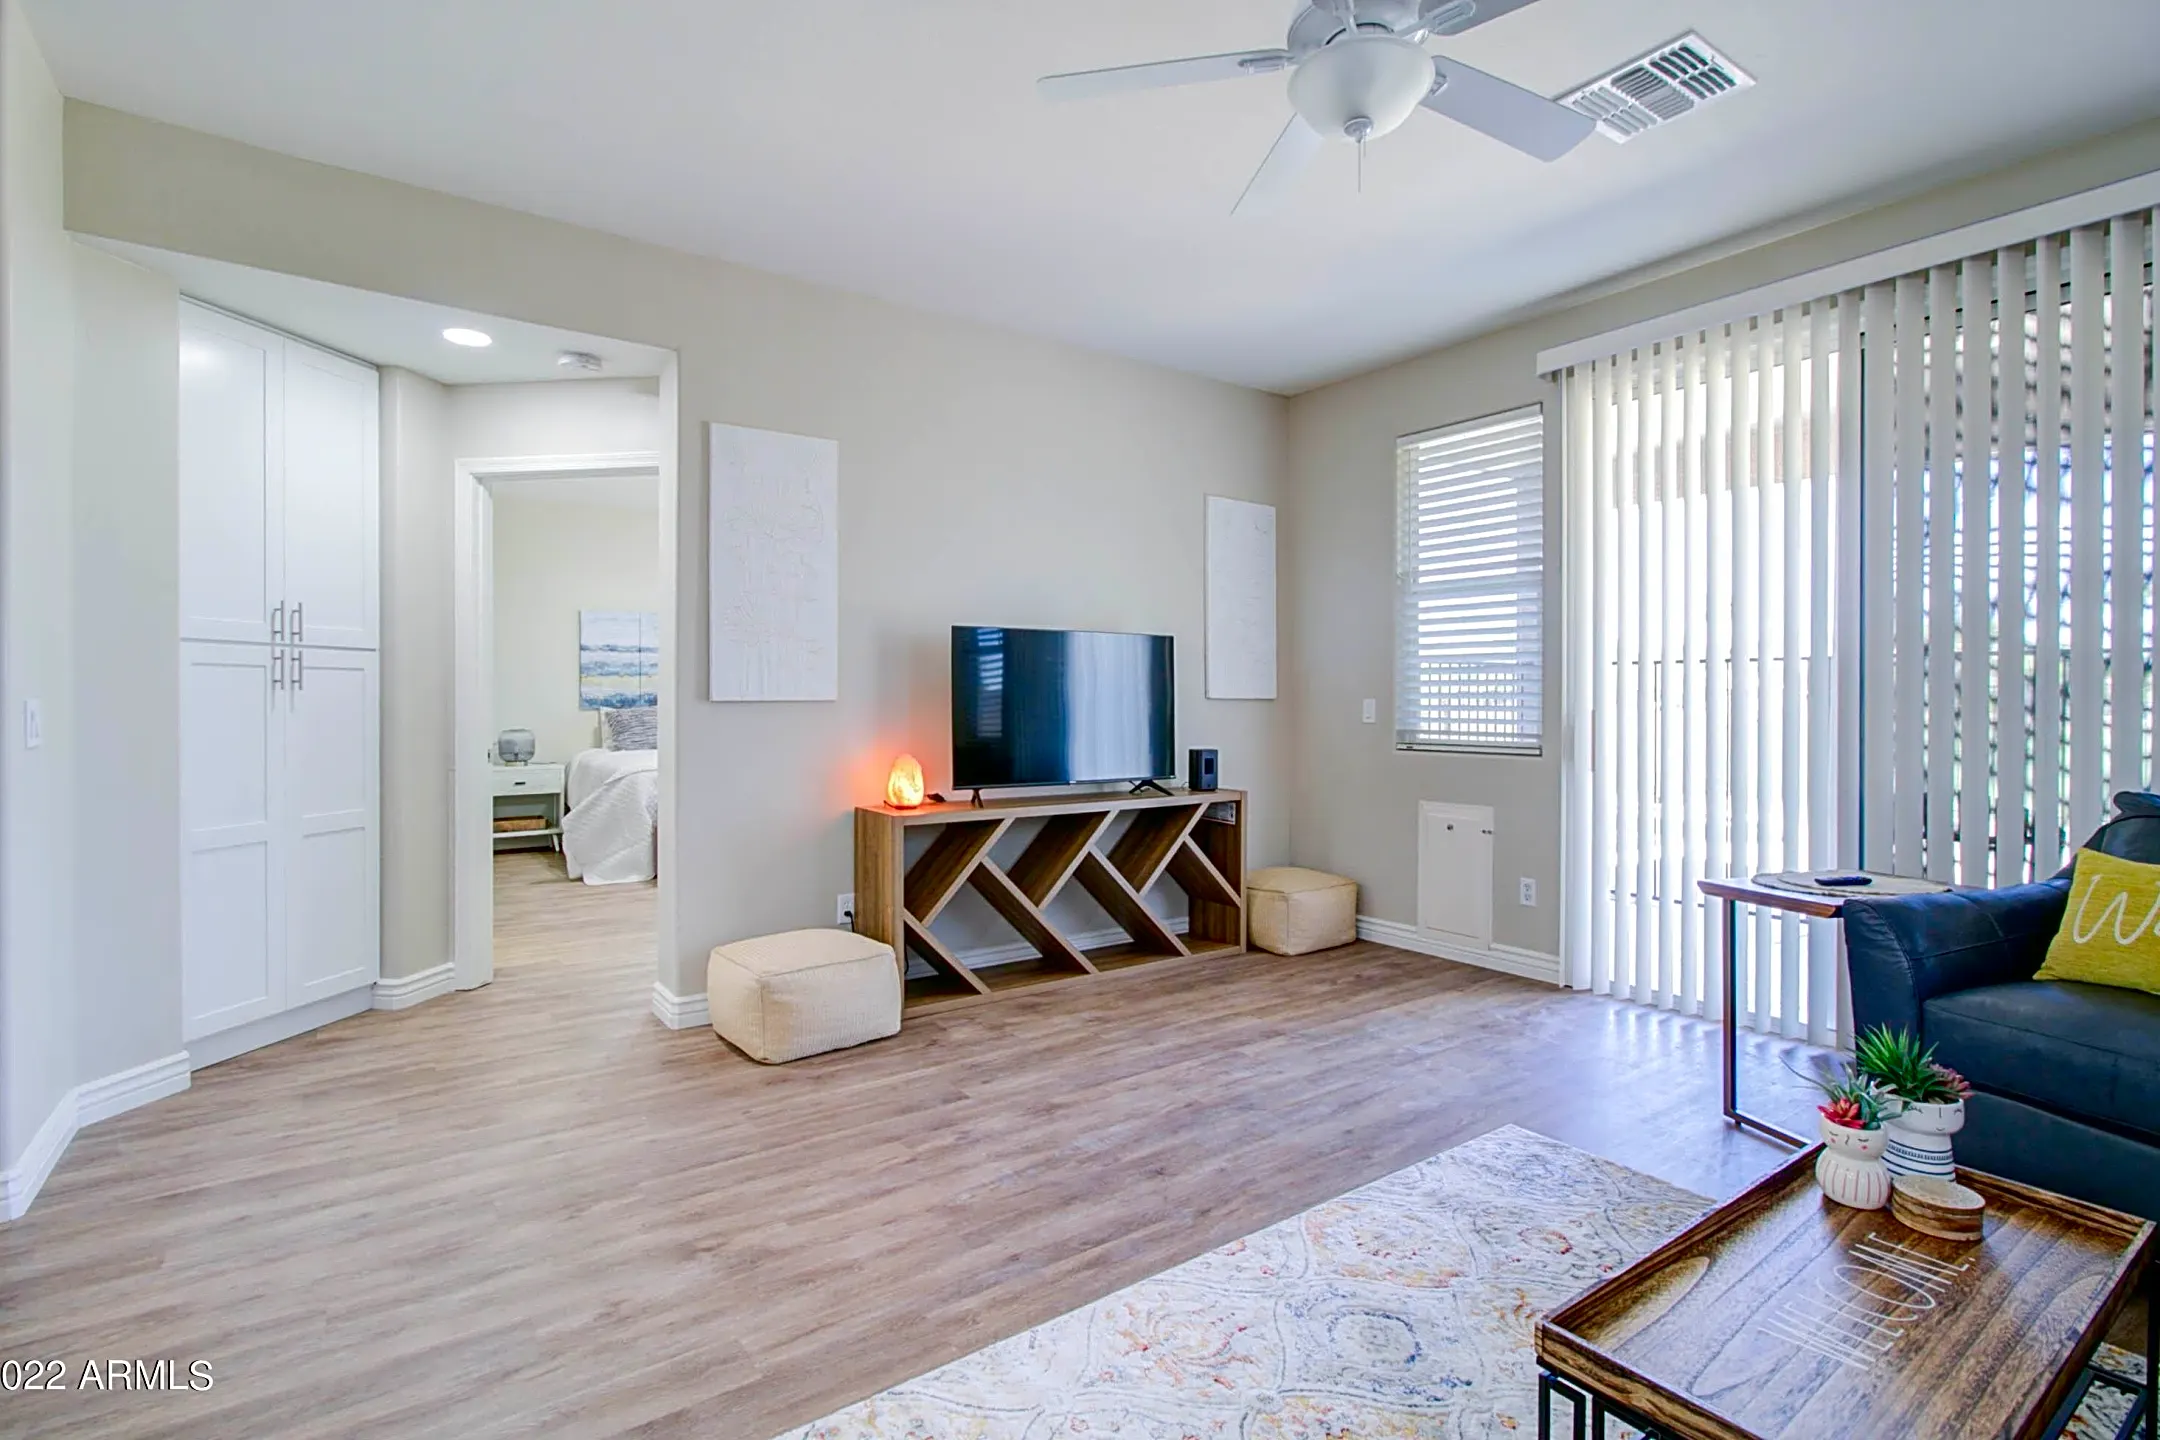 Living Room - 1000 S Roanoke St - Gilbert, AZ